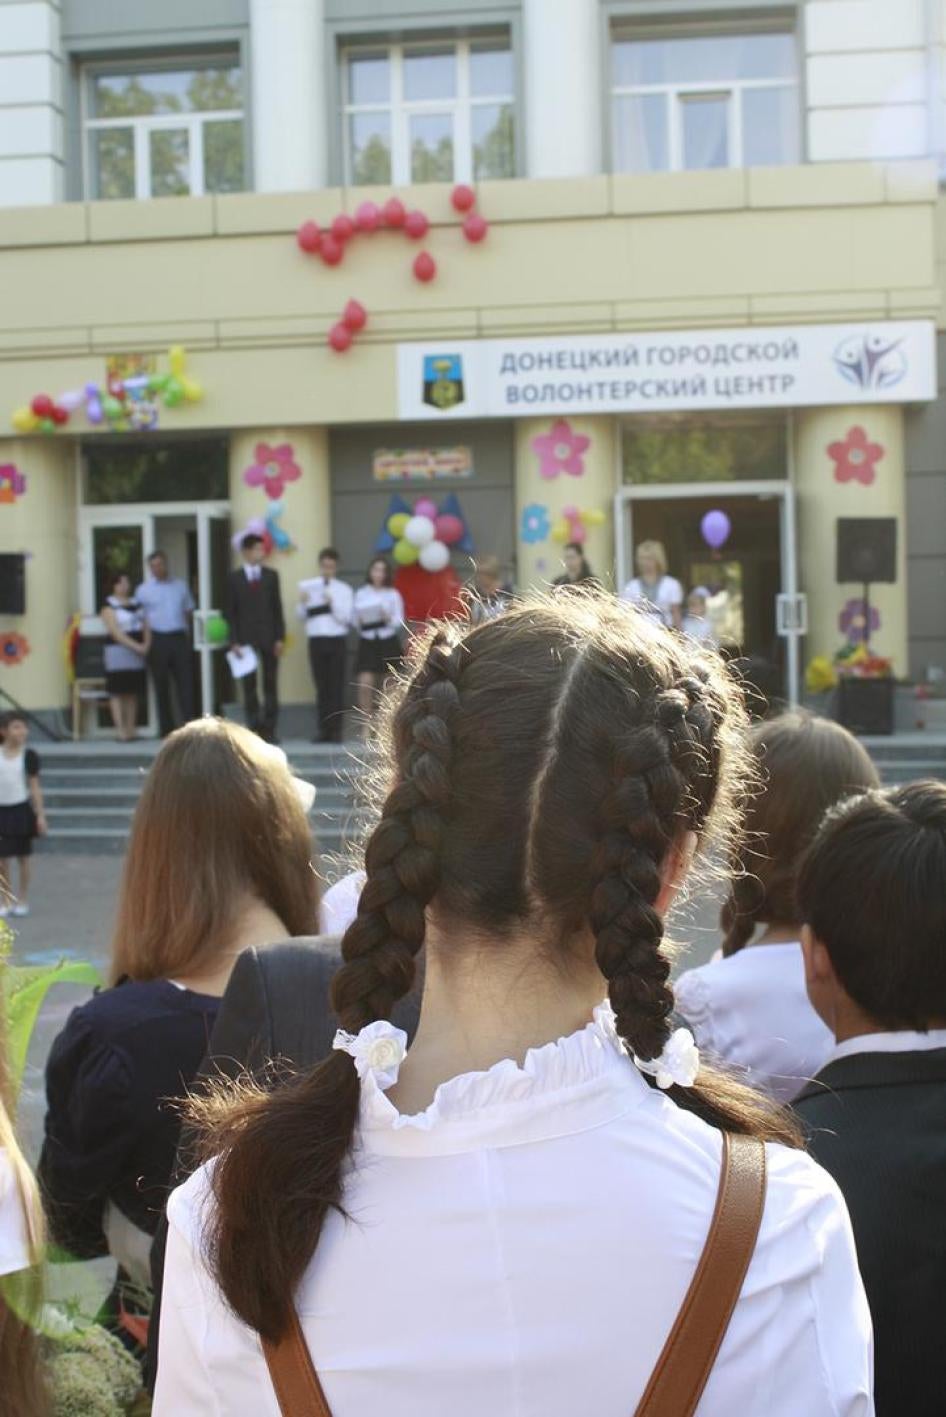 Cérémonie de la « première cloche » devant l’école numéro 2 de Donetsk, ville contrôlée par les forces rebelles dans l’est de l’Ukraine, marquant le début d'une nouvelle année scolaire.